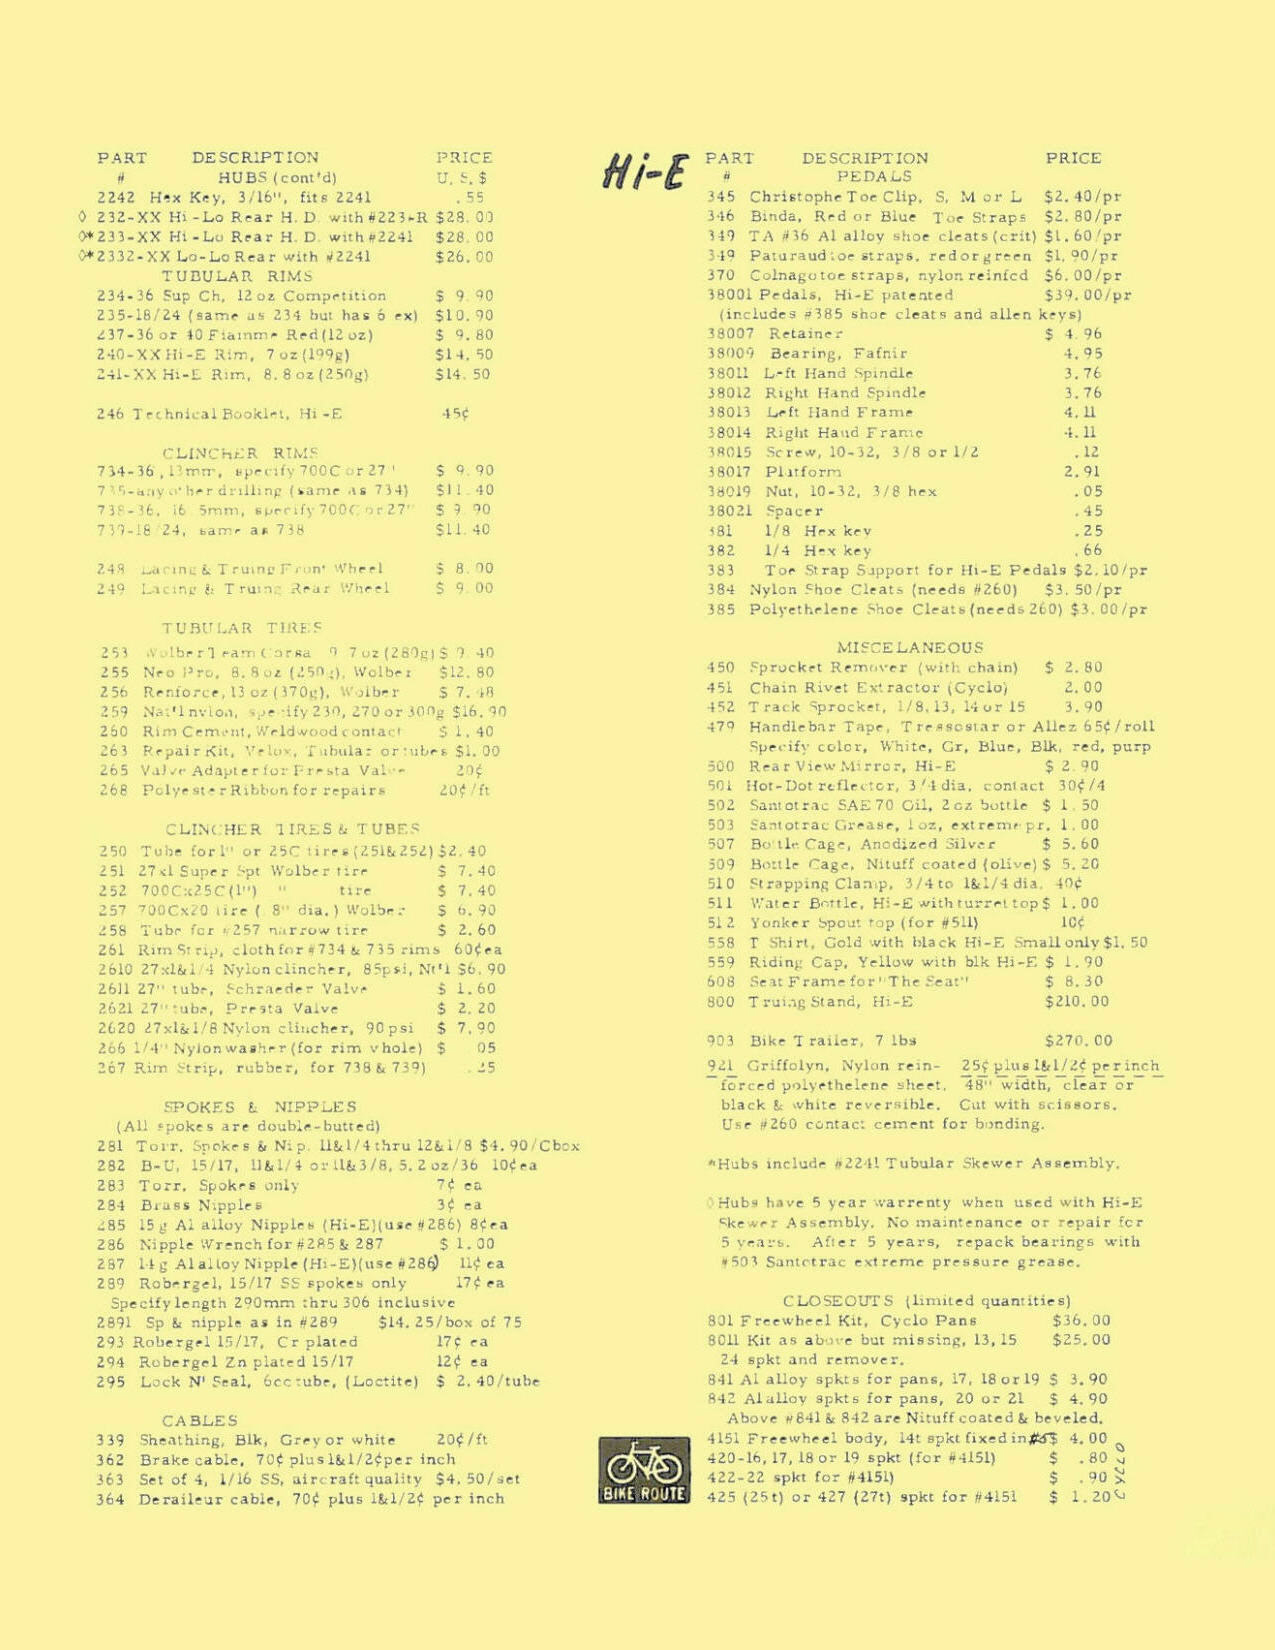 Hi-E parts list (01-1979) - Page 002